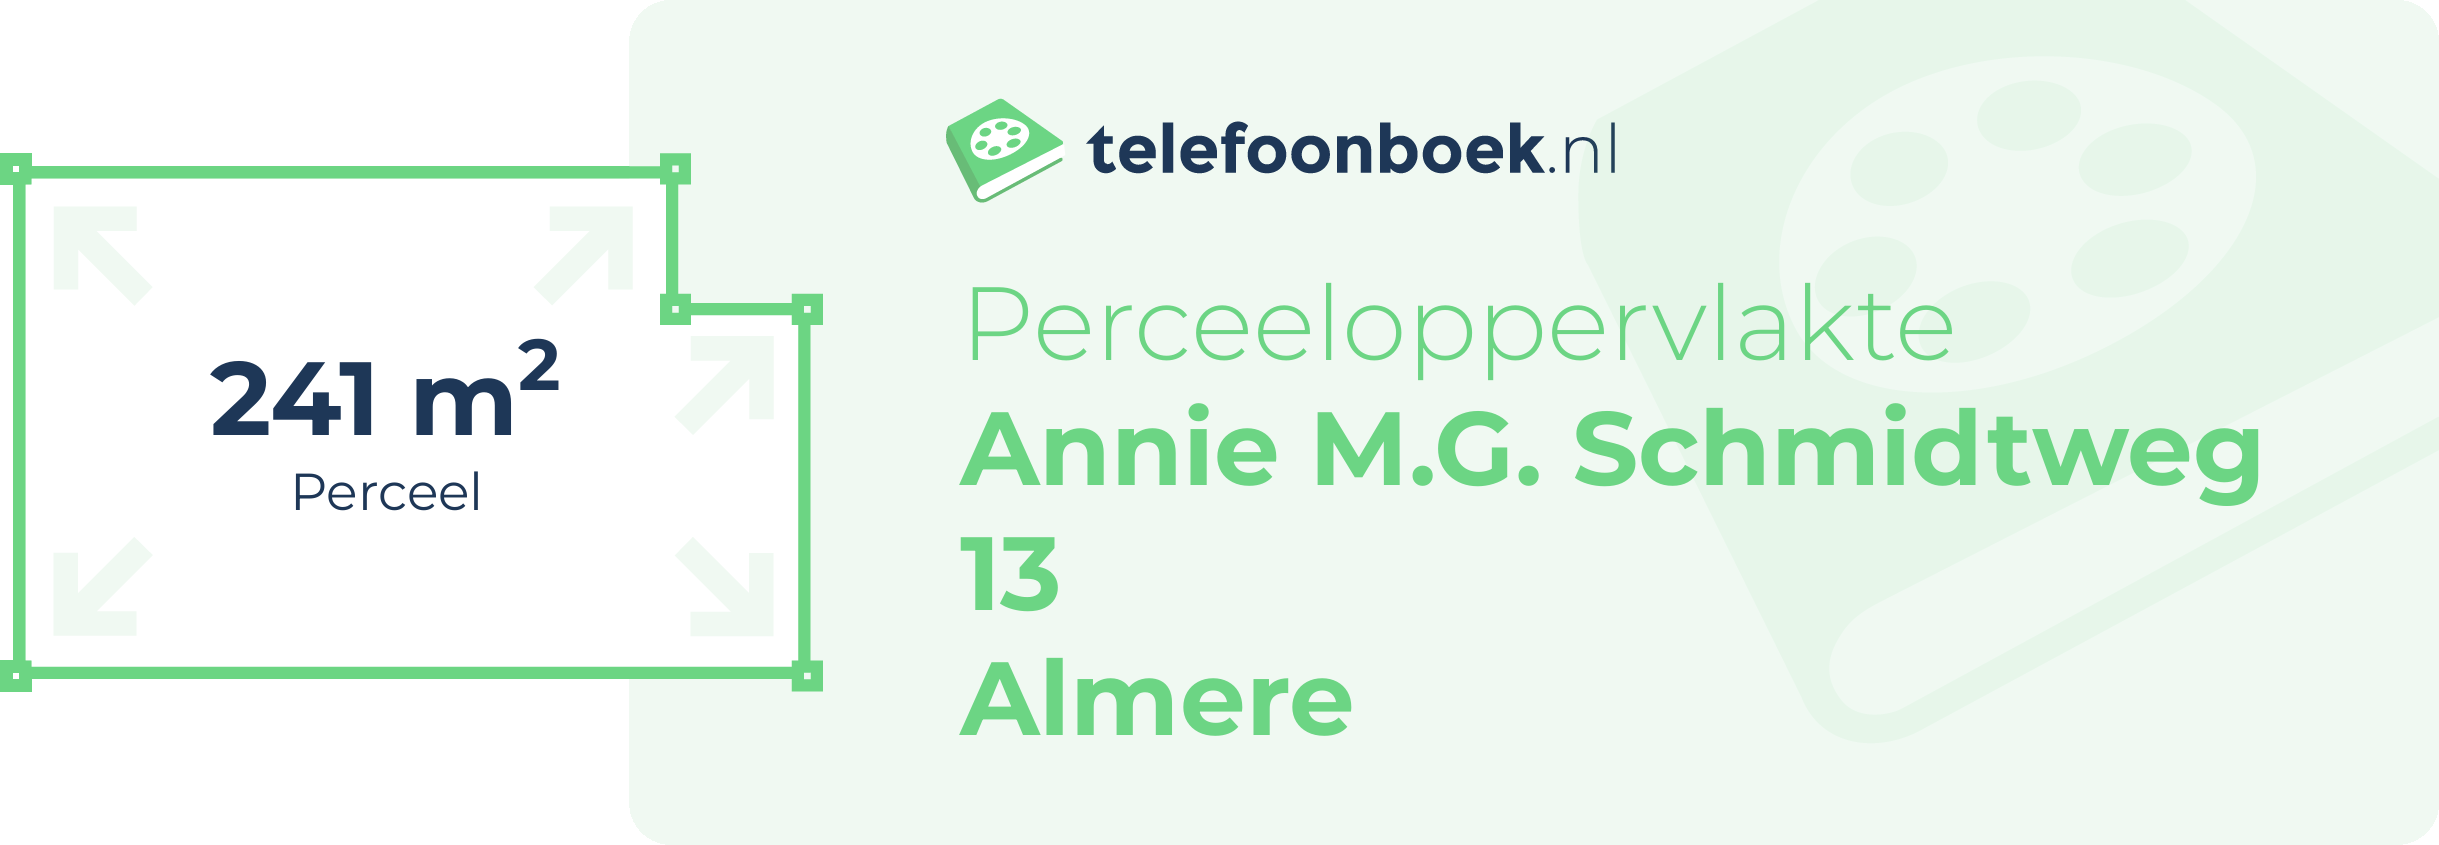 Perceeloppervlakte Annie M.G. Schmidtweg 13 Almere